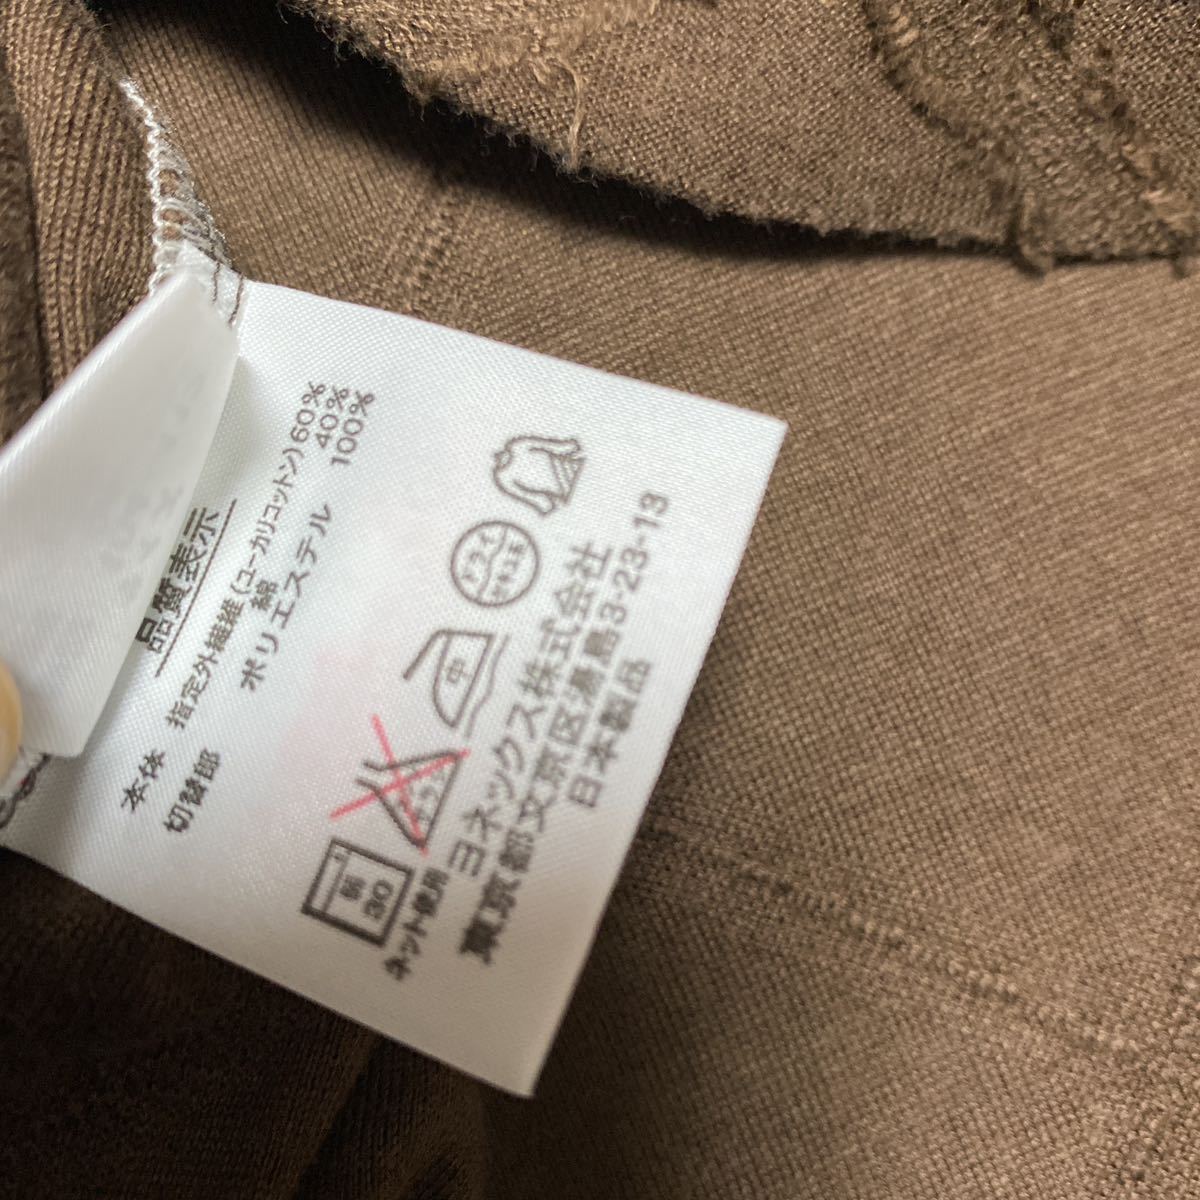 6B[ надеты немного ]YONEX Yonex GOLF Golf LL чай Brown рубашка с коротким рукавом very cool MADE IN JAPAN сделано в Японии дешевый 